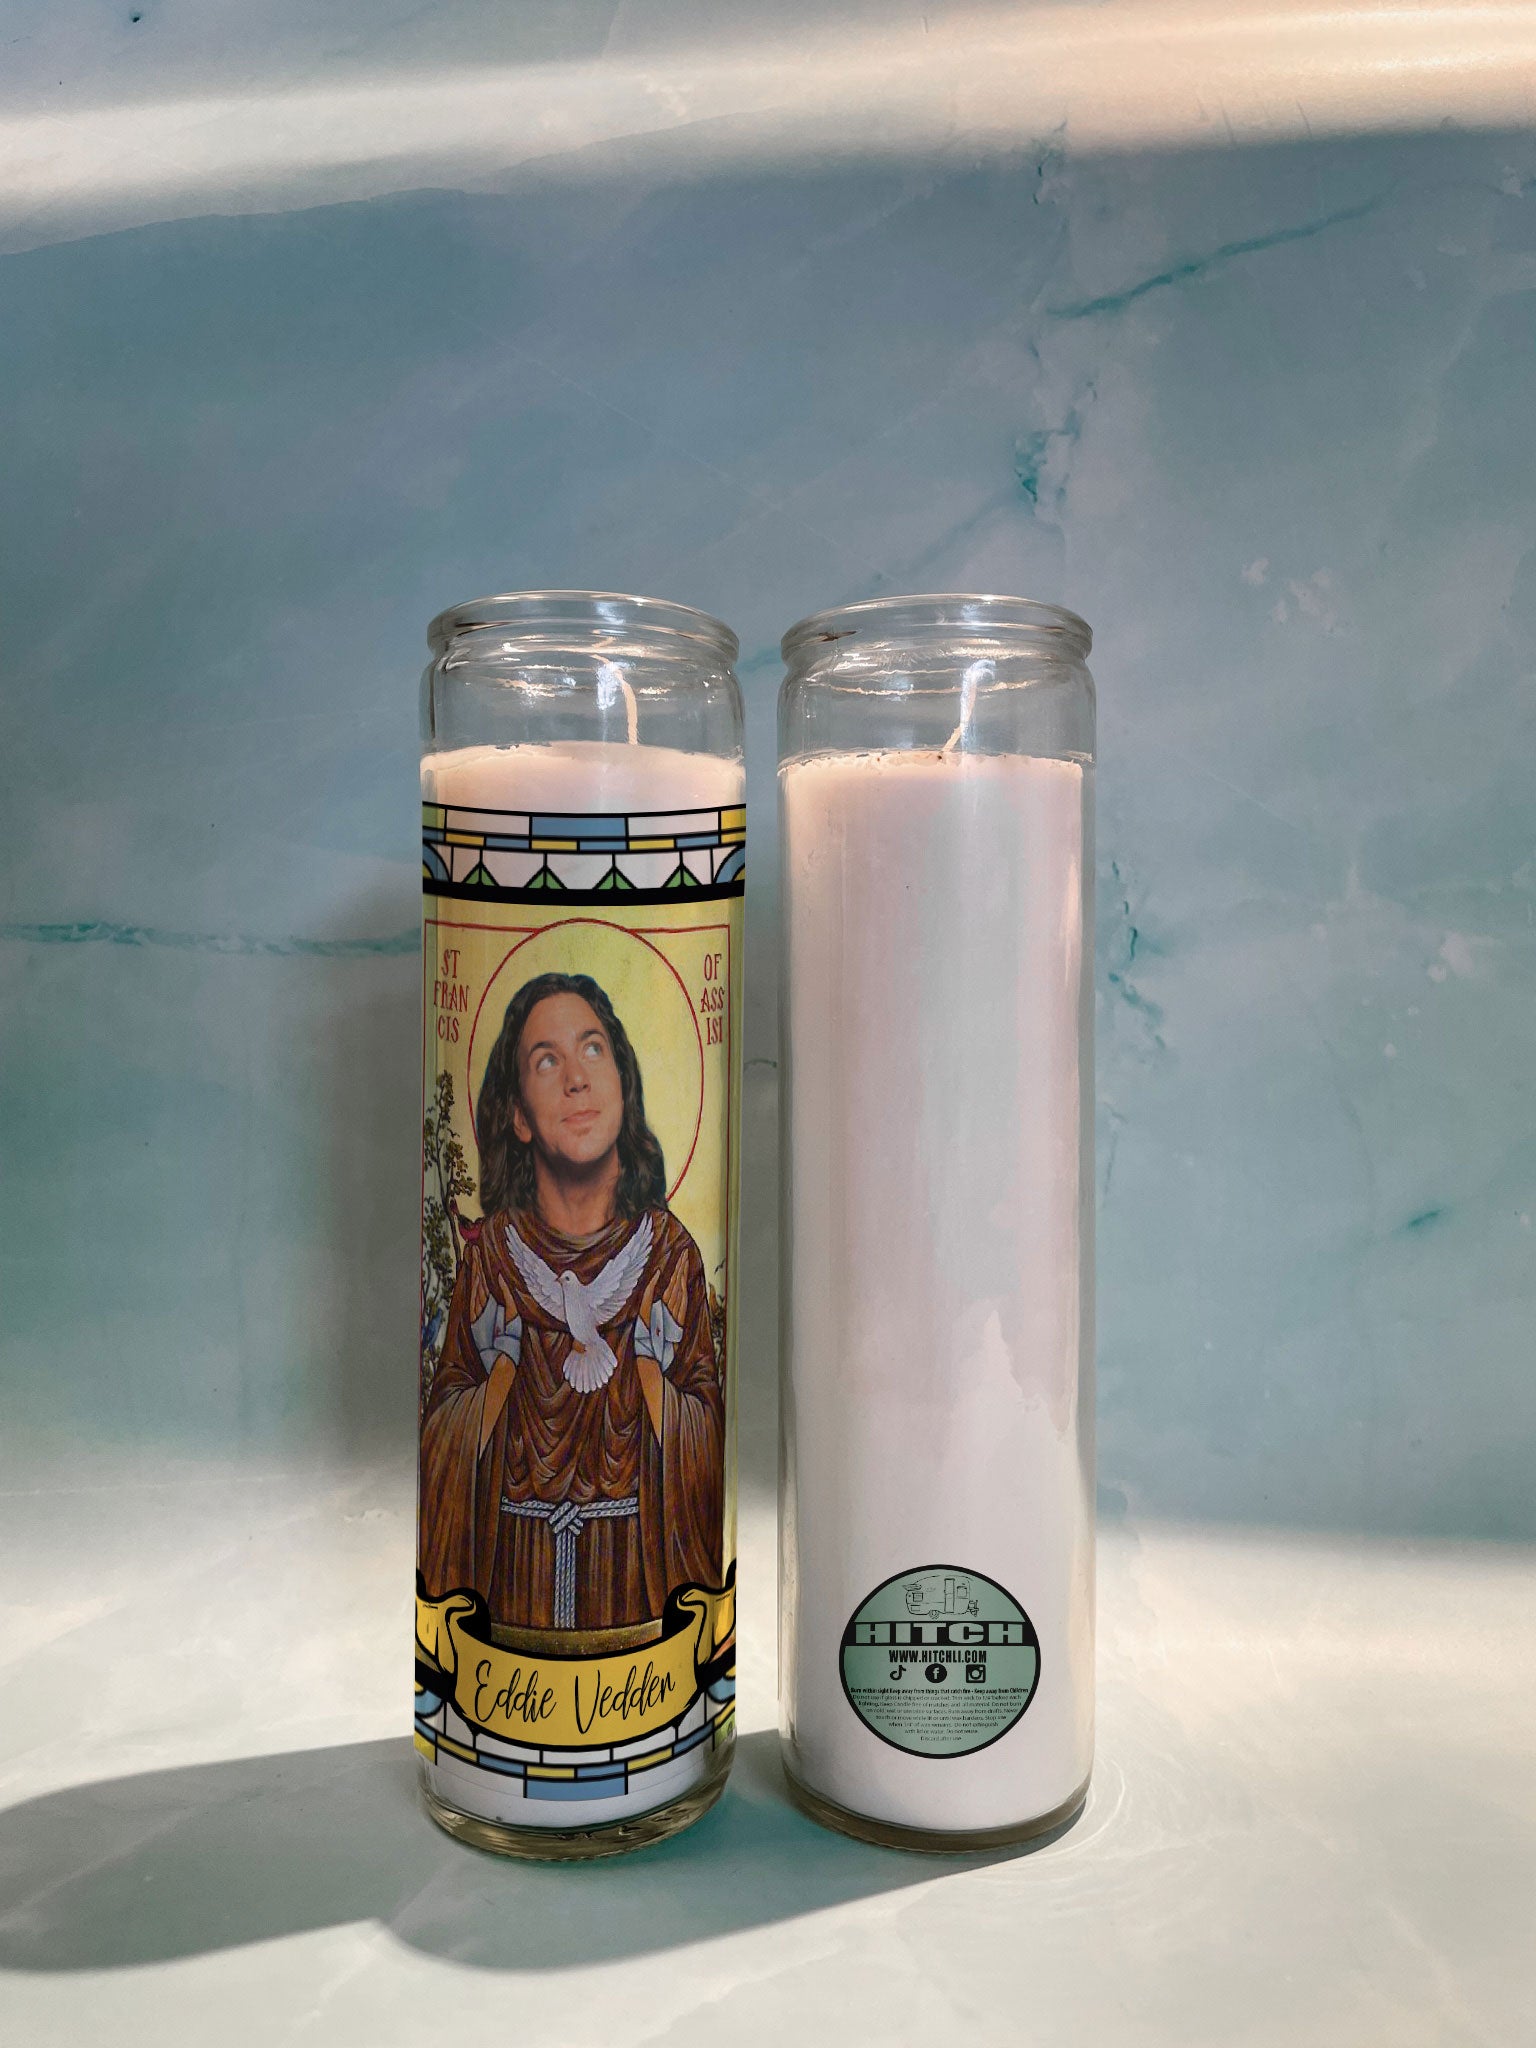 Eddie Vedder Original Prayer Candle